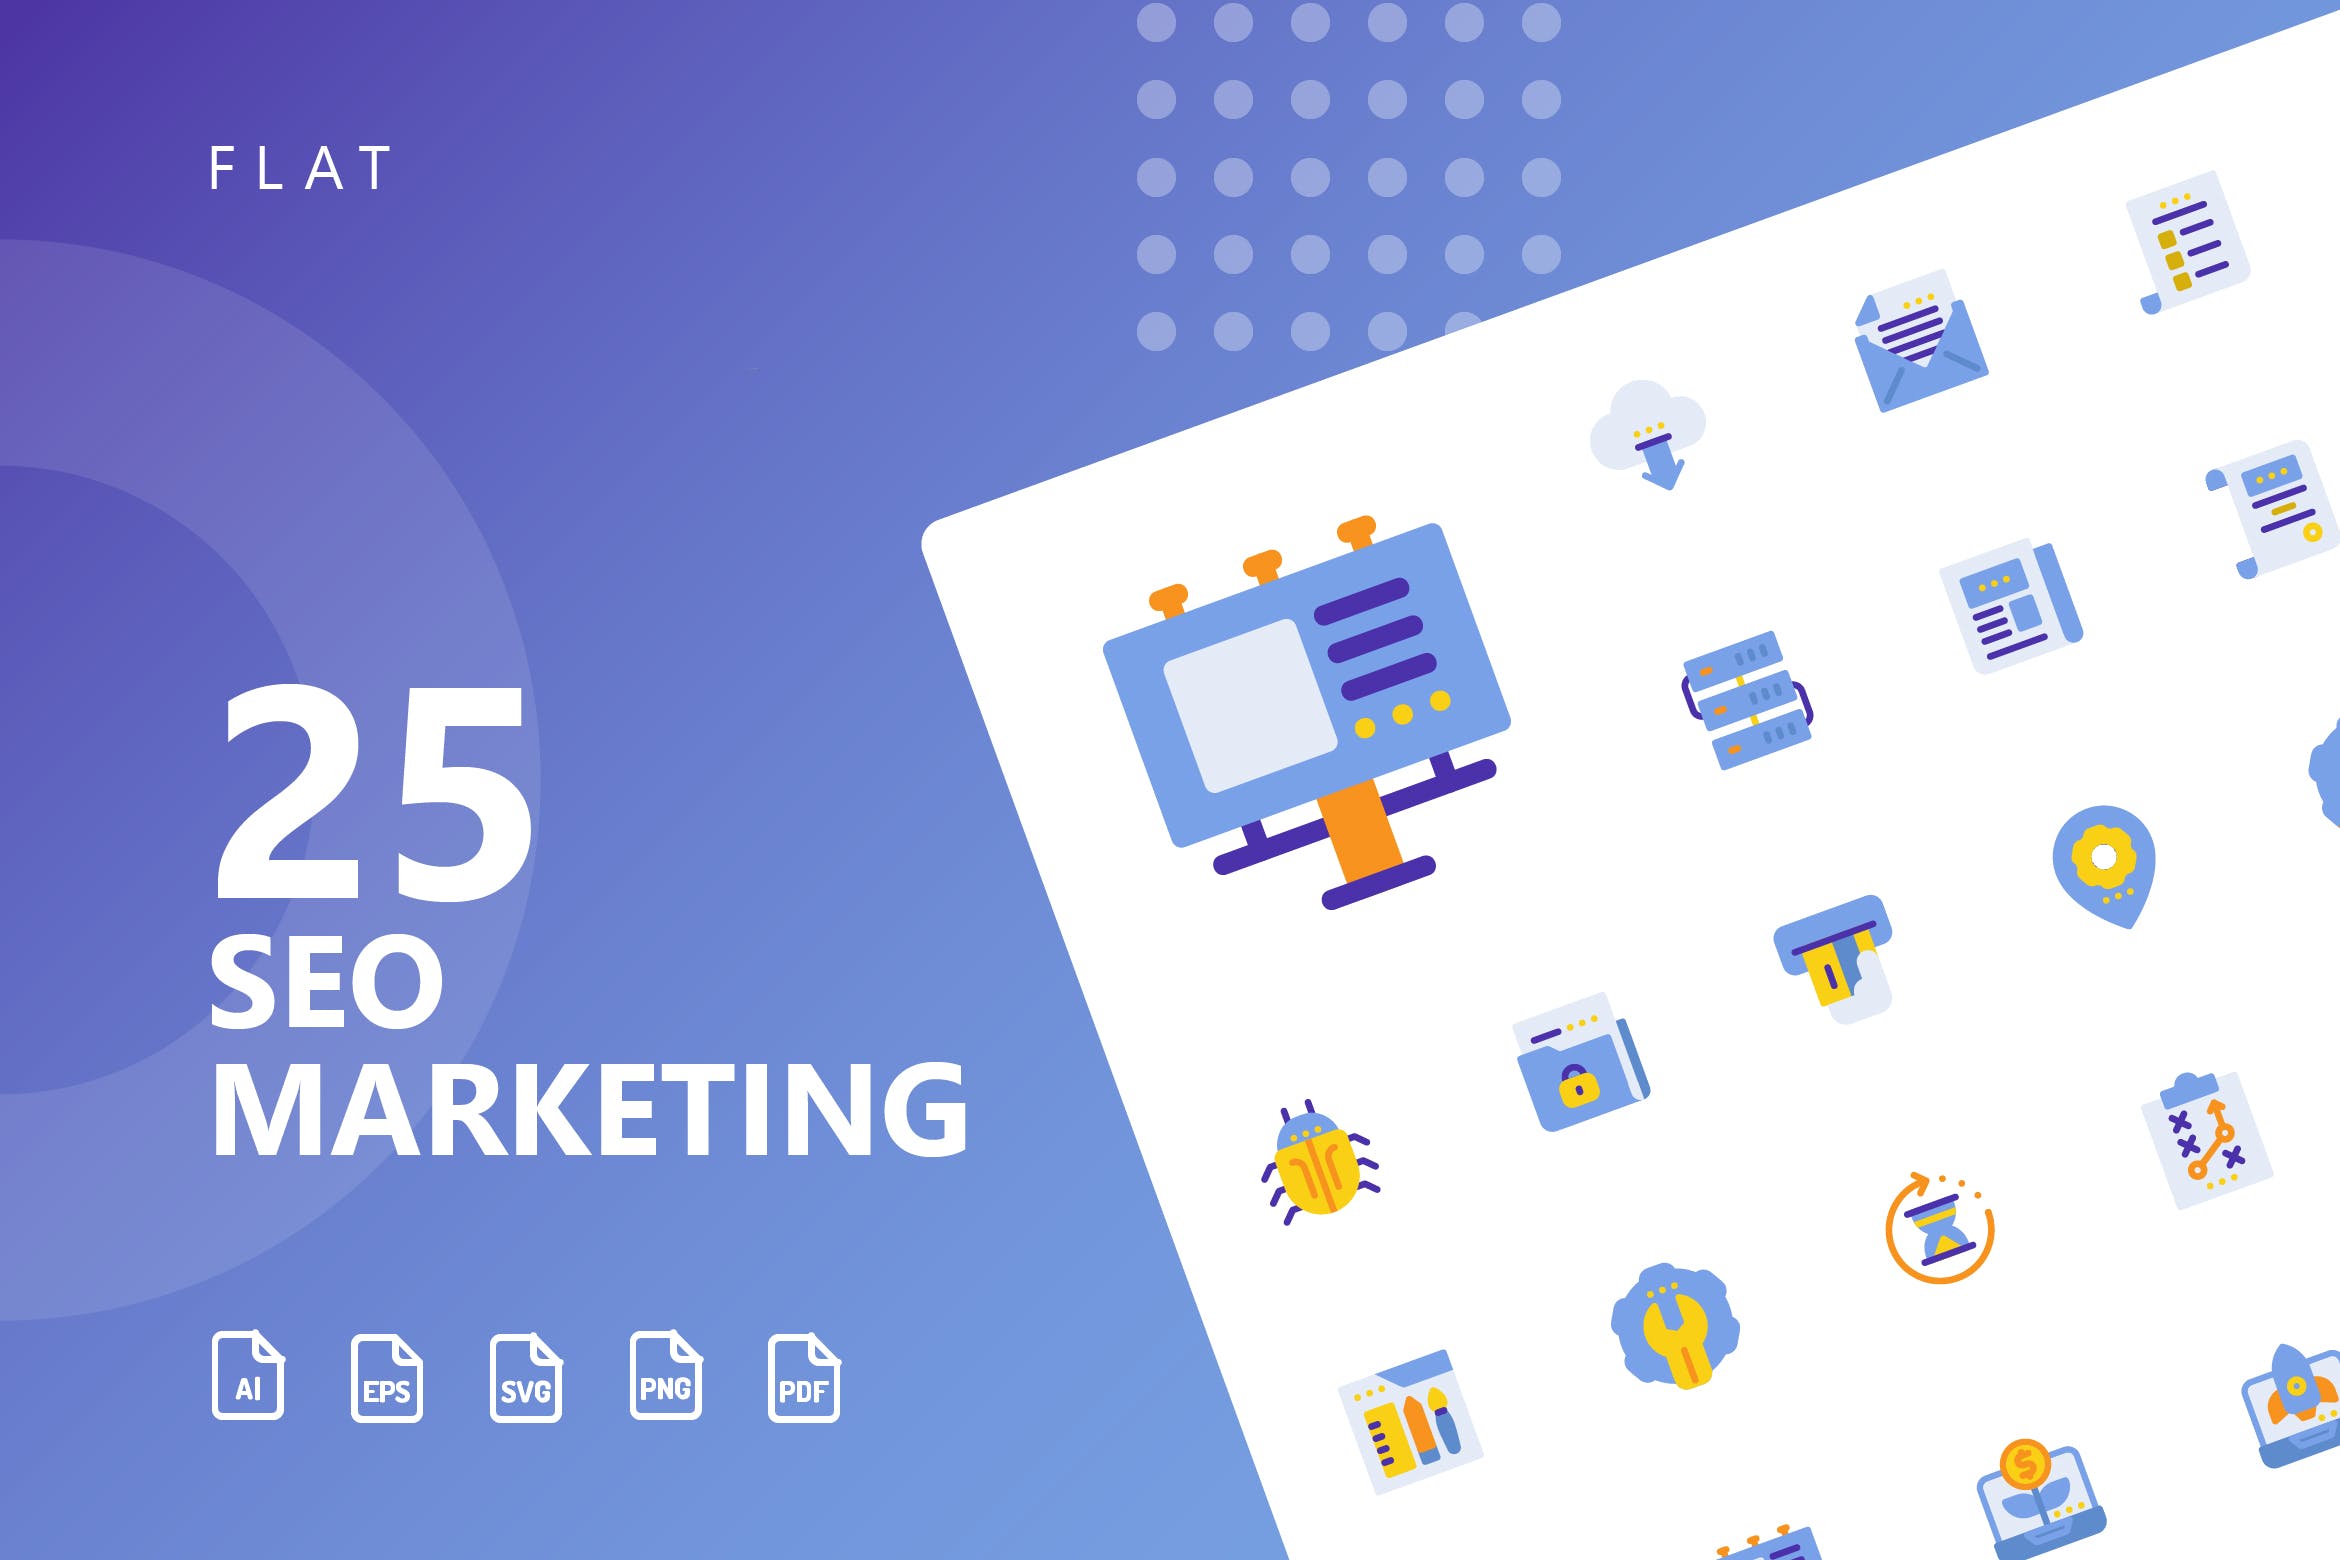 25枚SEO搜索引擎优化营销扁平化矢量蚂蚁素材精选图标v1 SEO Marketing Flat Icons插图